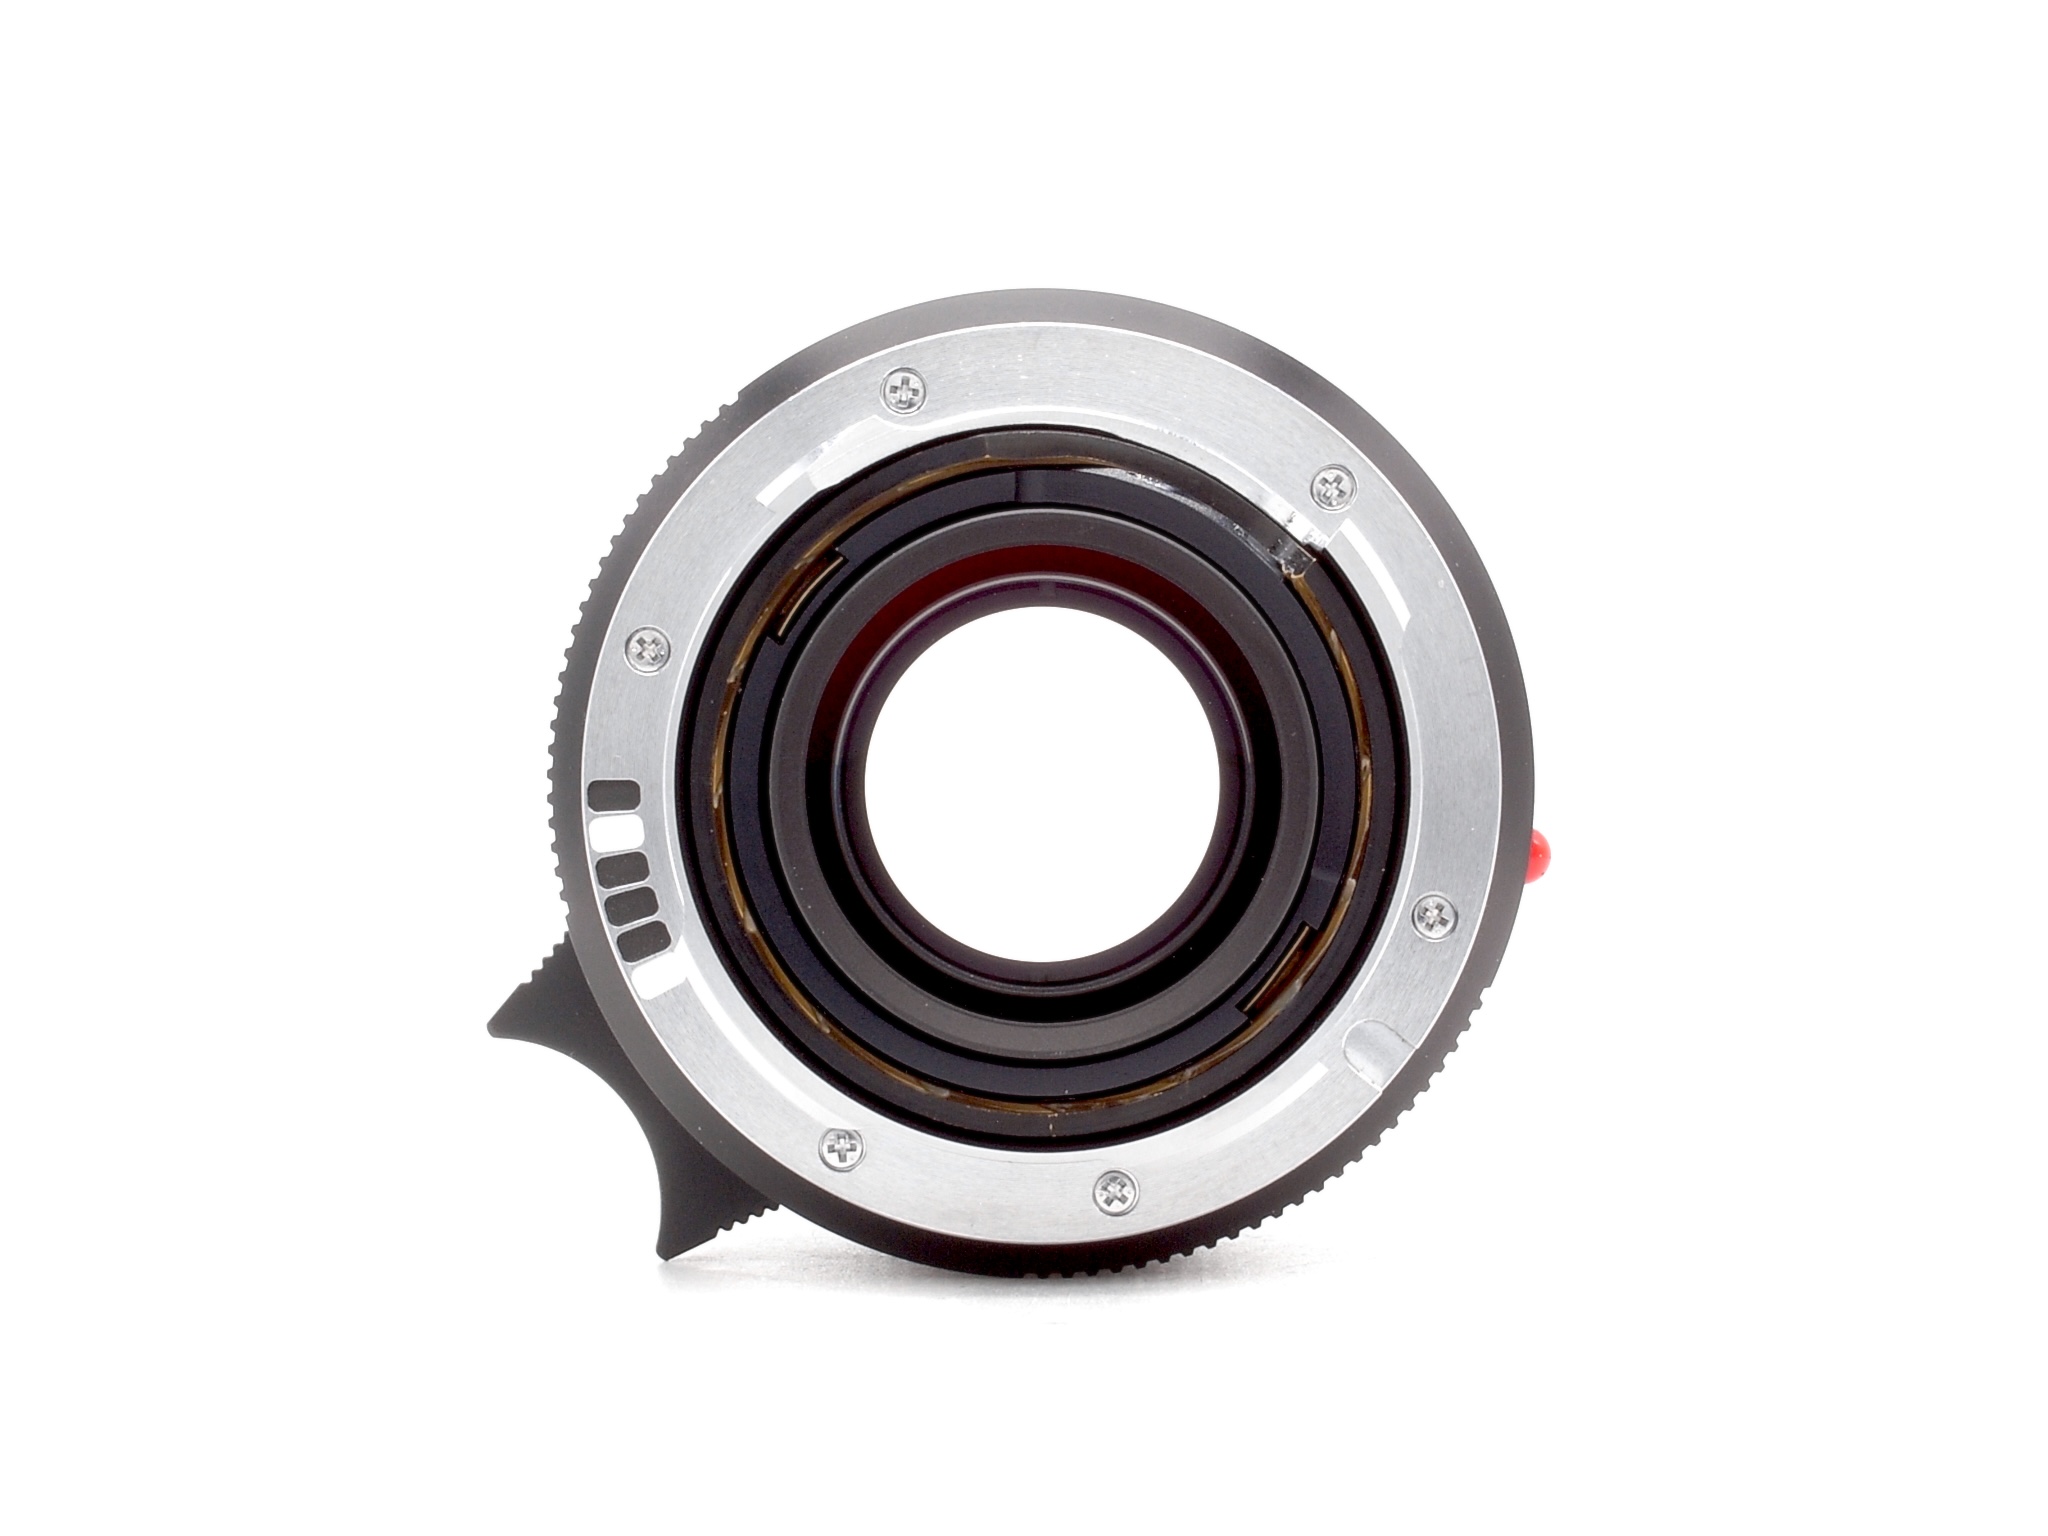 Leica Summilux-M 1.4/35mm ASPH. schwarz 6Bit